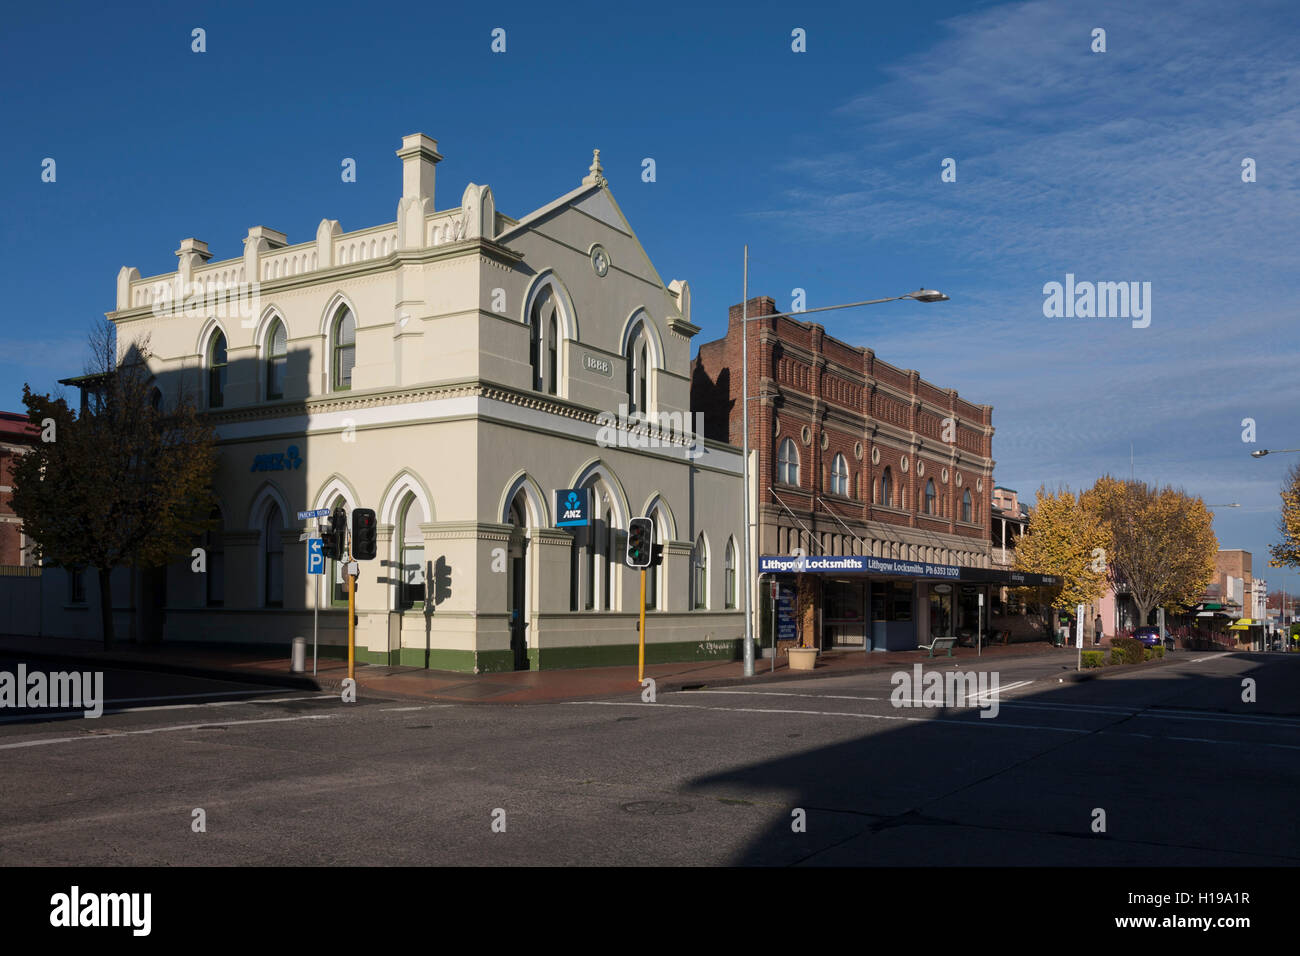 ANZ BANK edificio construido 1888 Lithgow New South Wales Australia Foto de stock